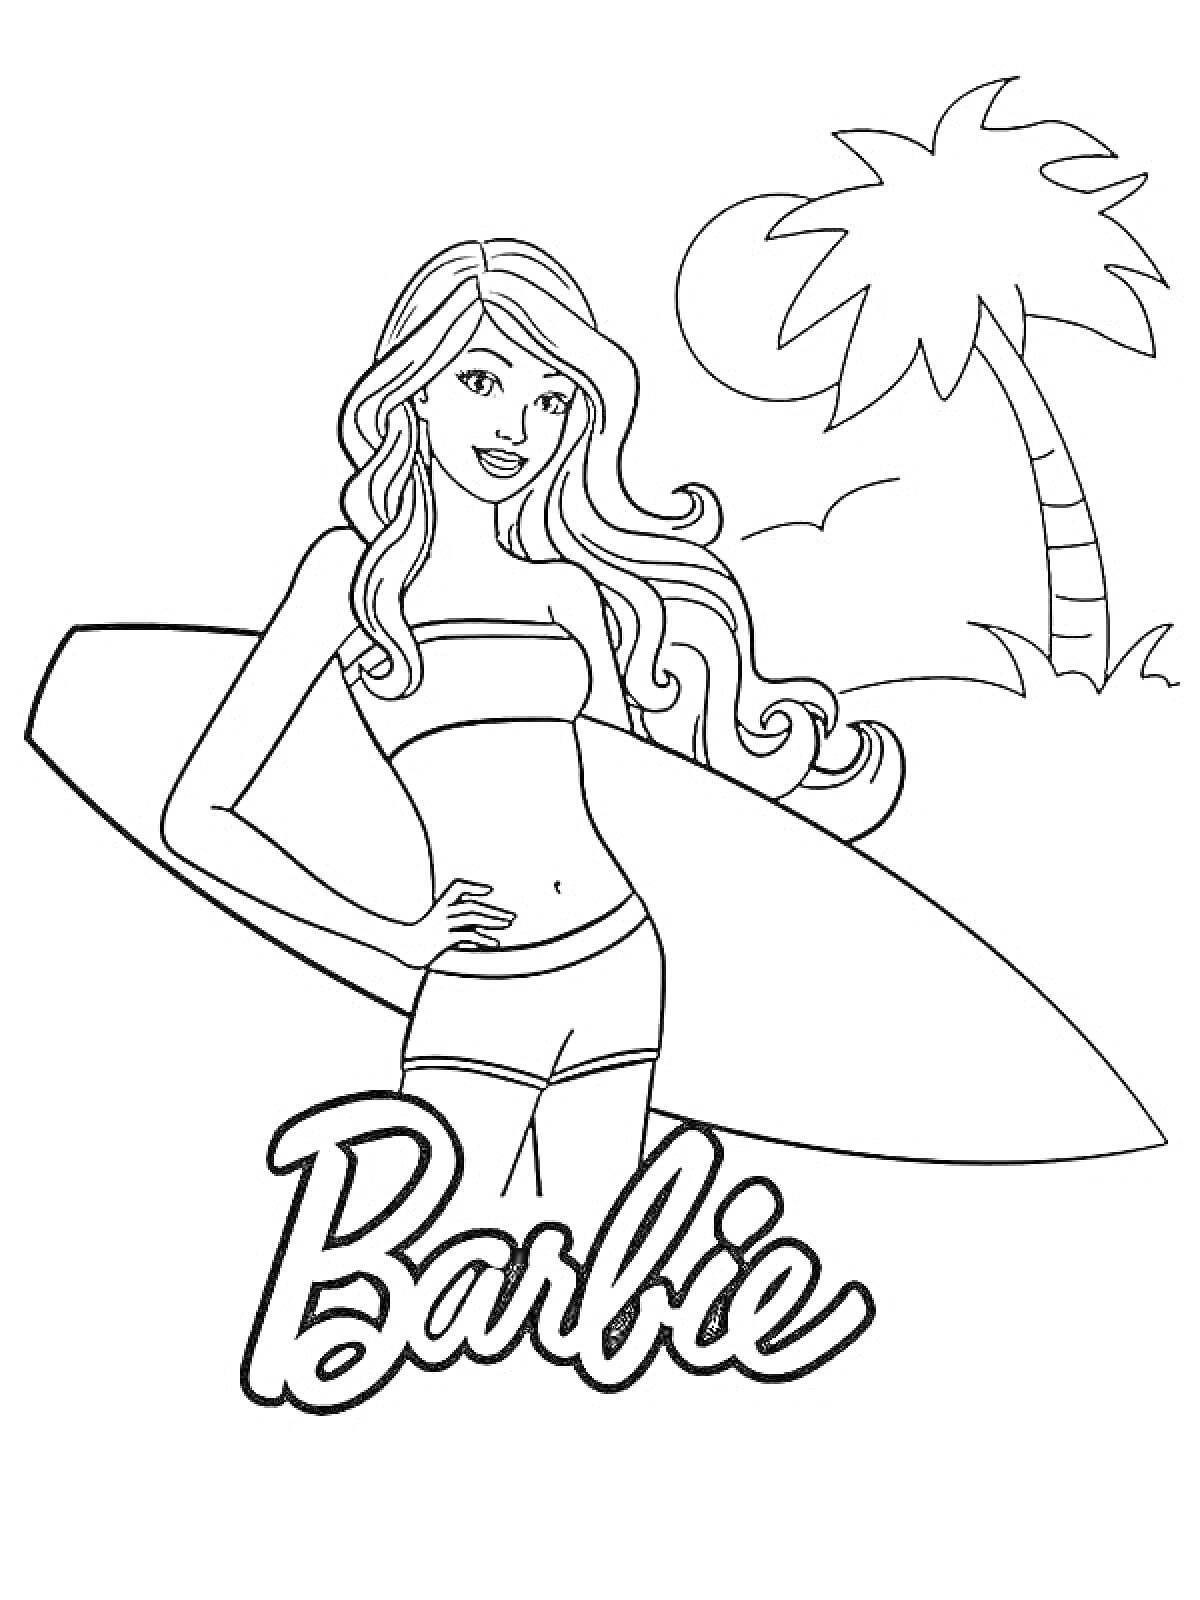 Раскраска Барби-серфингистка с доской для серфинга и пальмой на фоне